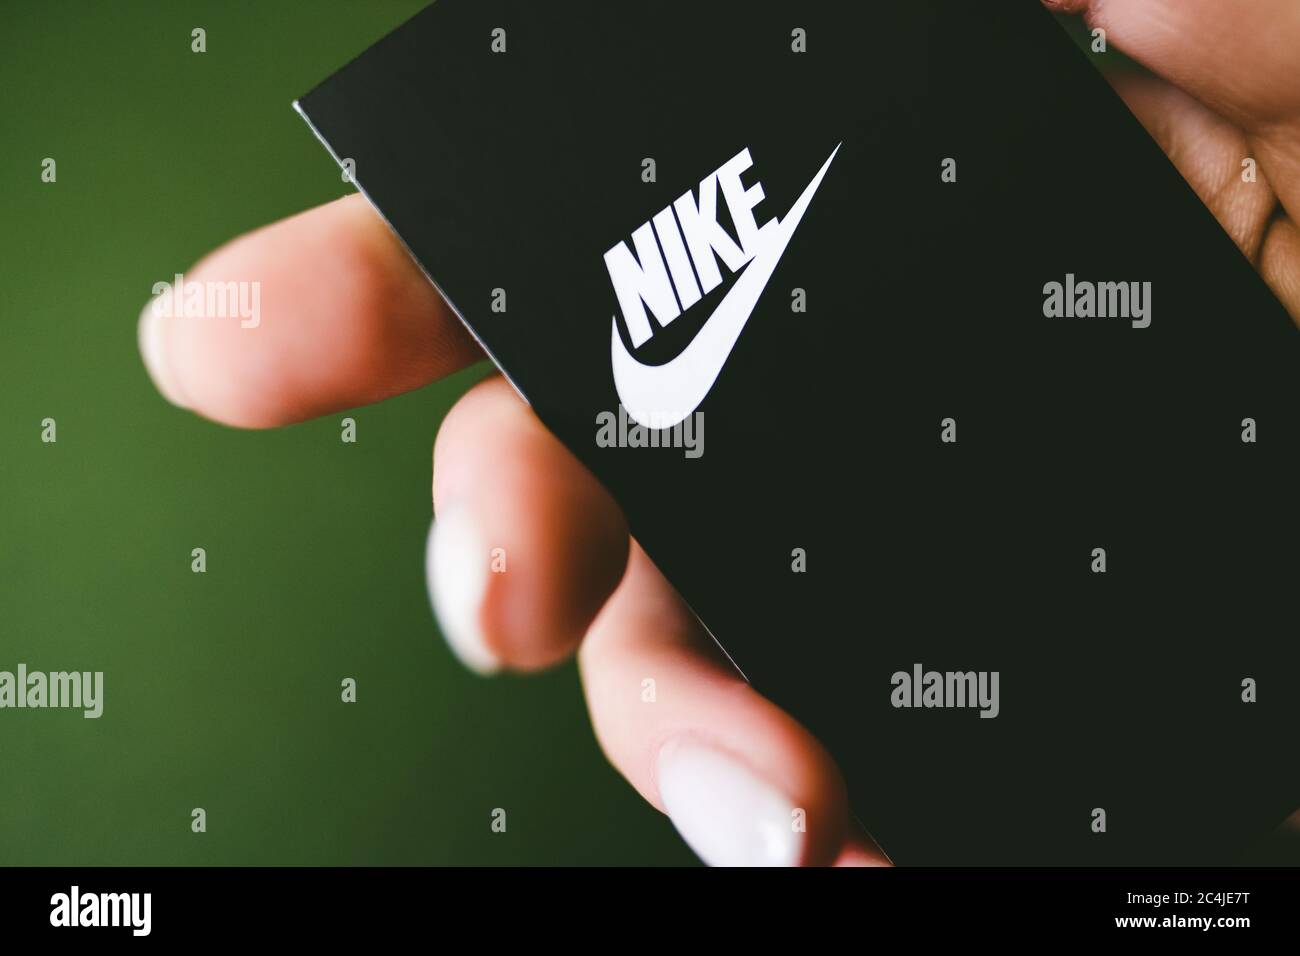 Nike Logo Label on Green Background sẽ khiến bạn phải trầm trồ với sự tinh tế của thiết kế. Với màu xanh làm nền, đôi giày Nike và logo nổi bật, bức ảnh này thật sự hấp dẫn và cuốn hút.